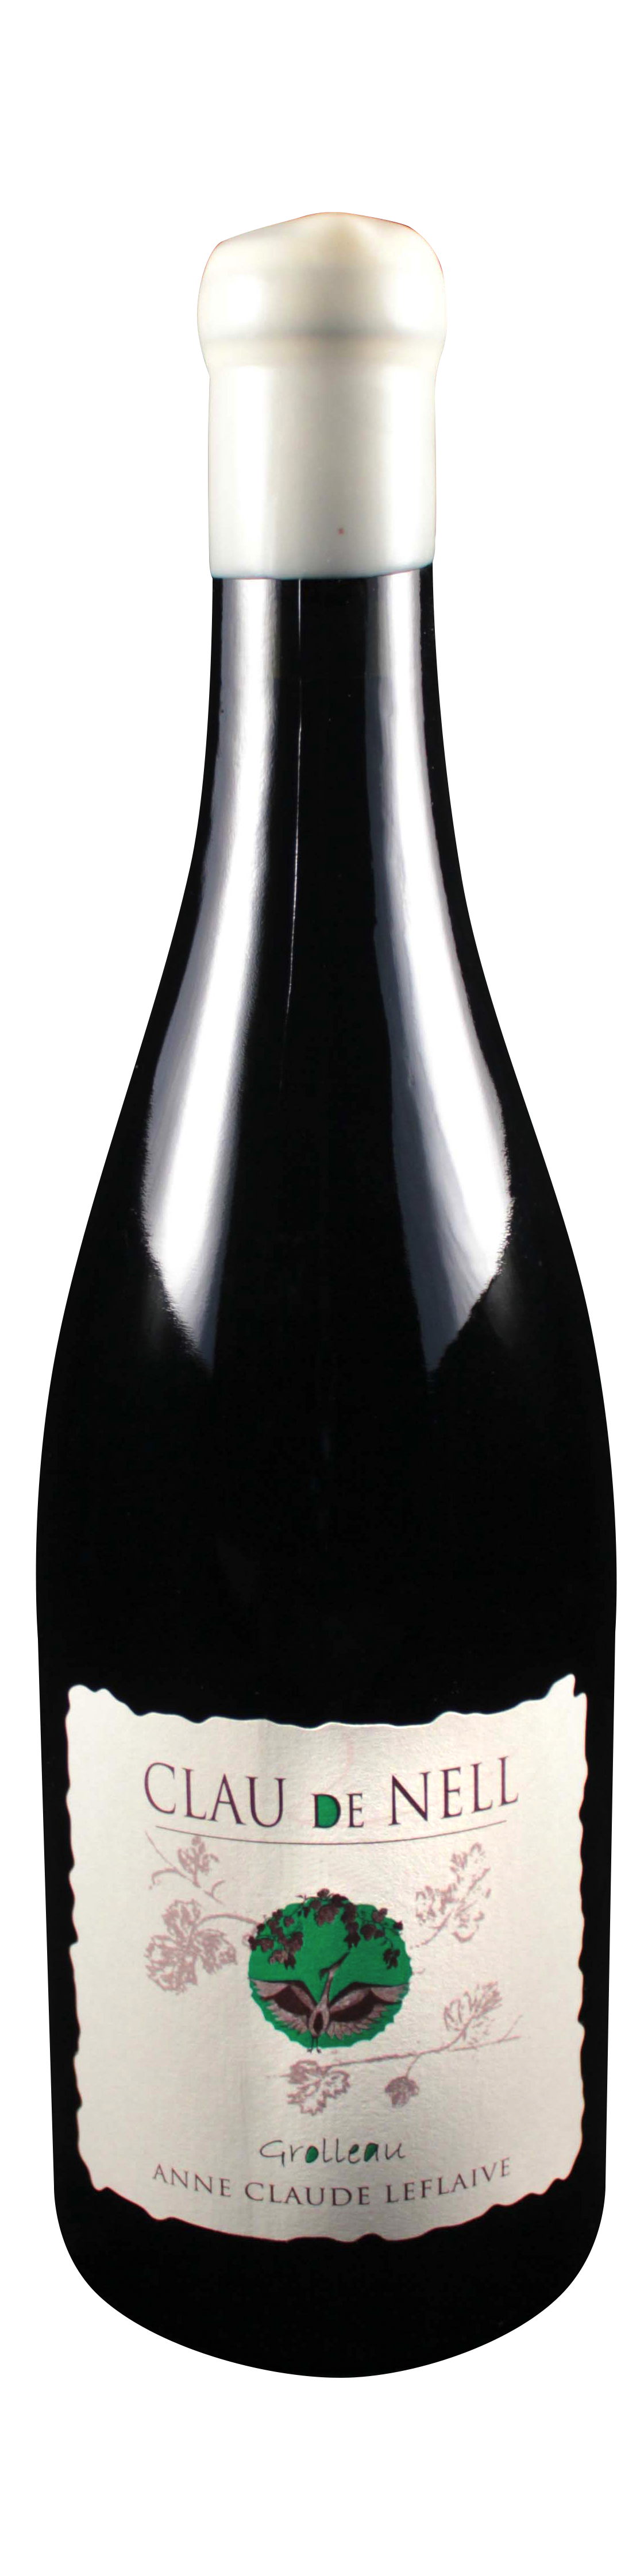 Bottle shot of 2009 Grolleau